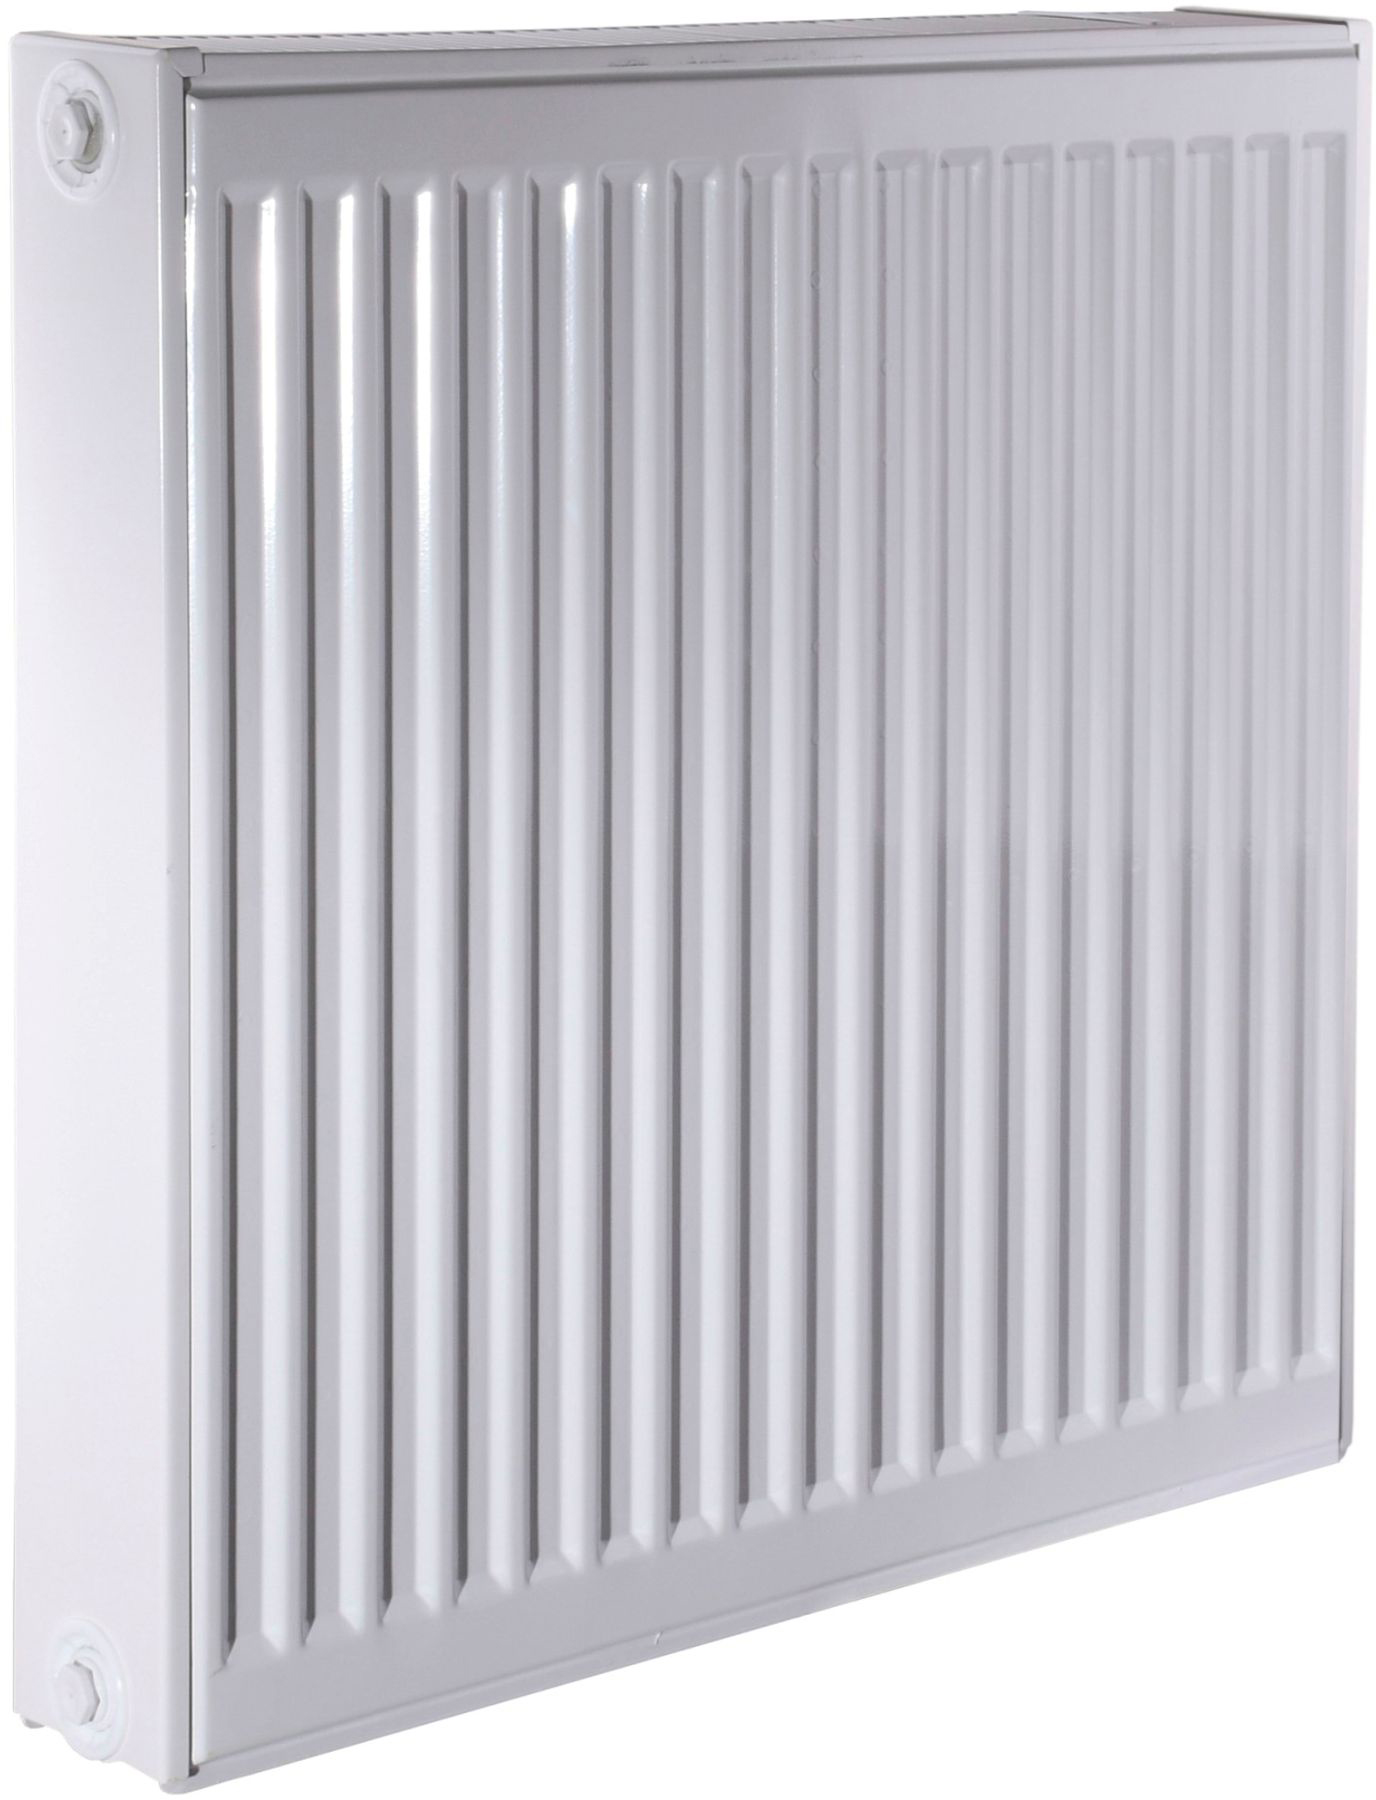 Радиатор для отопления Queen Therm 22 бок 600x600